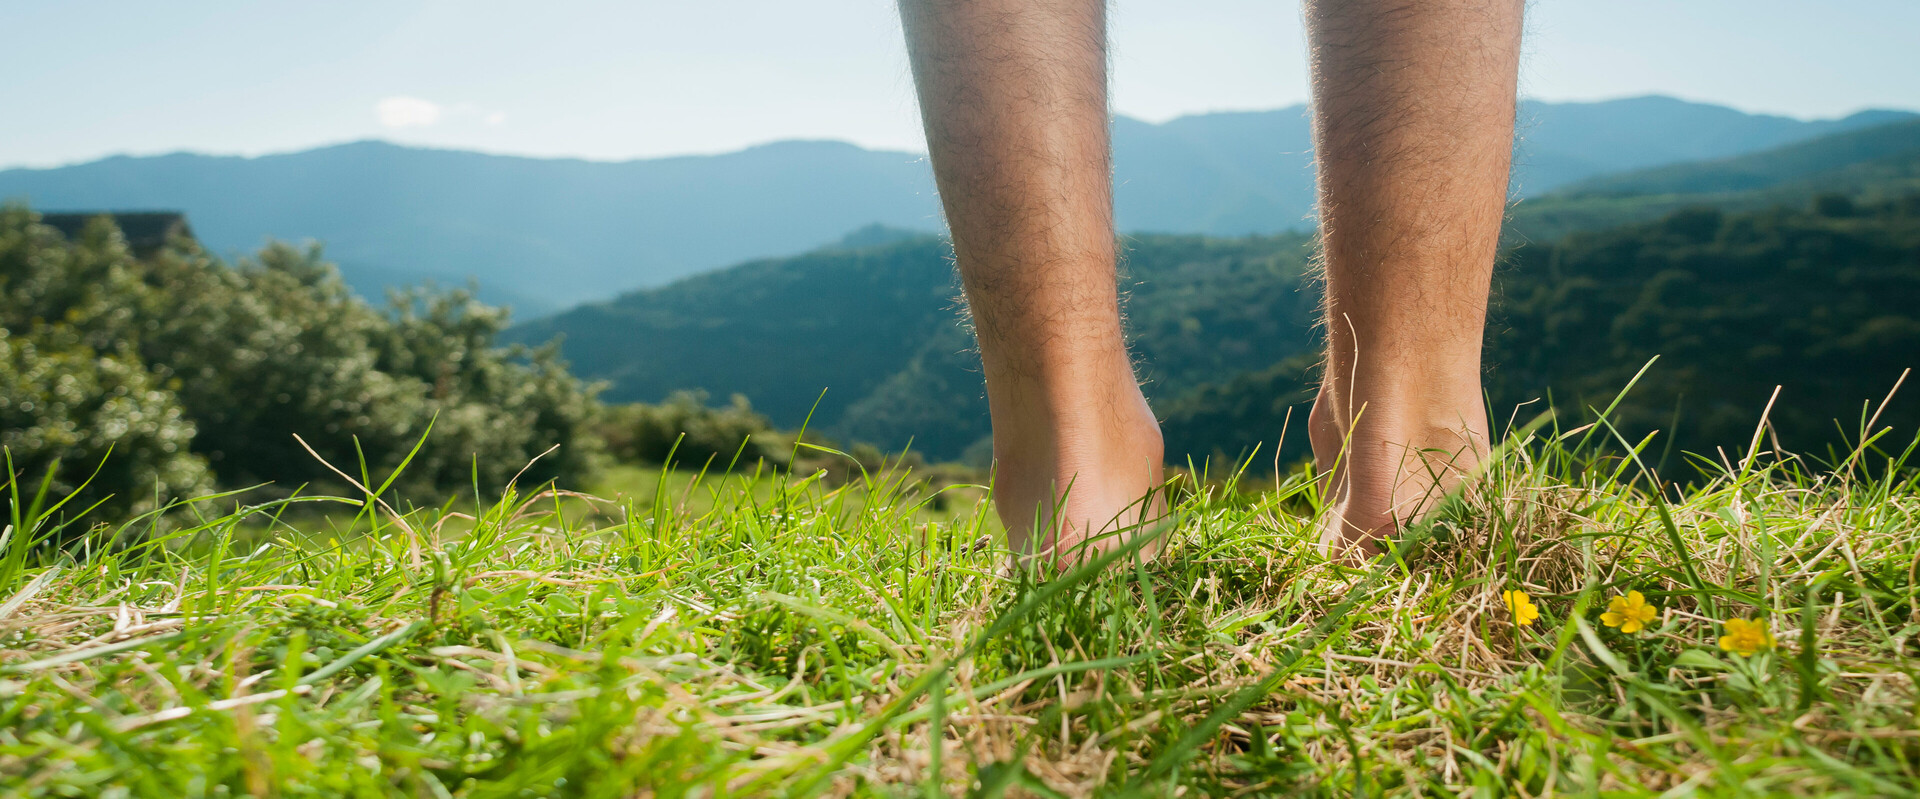 Zwei männliche, nackte Beine stehen vor einem Alpenpanorama im Gras und symbolisieren das Thema Blasen an den Füßen.